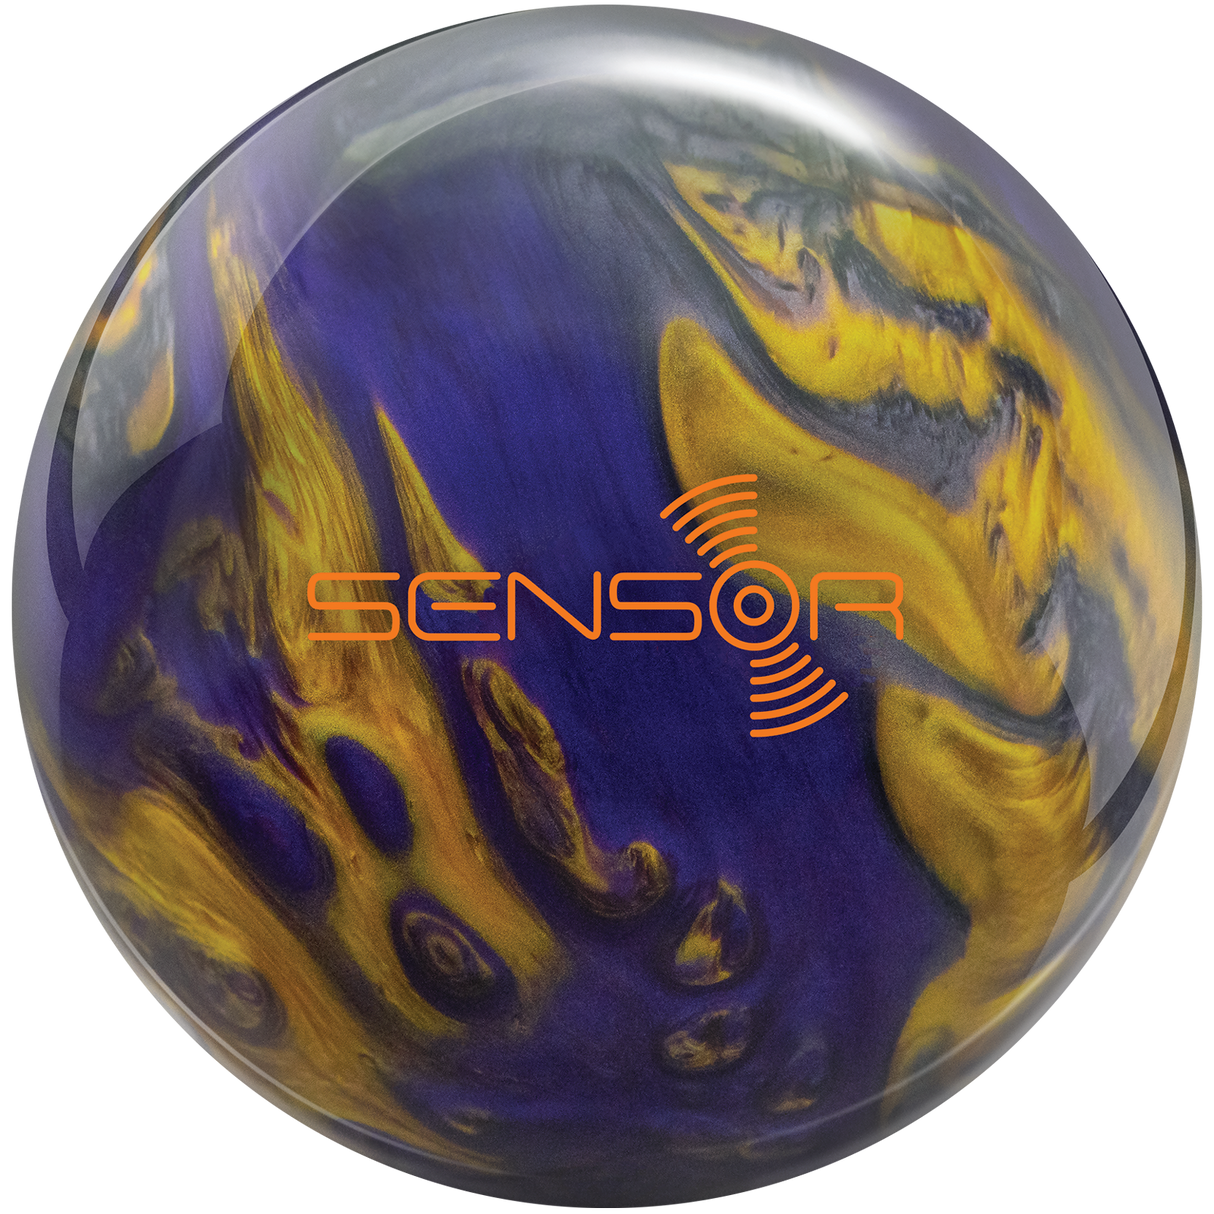 track-sensor bowling ball insidebowling.com